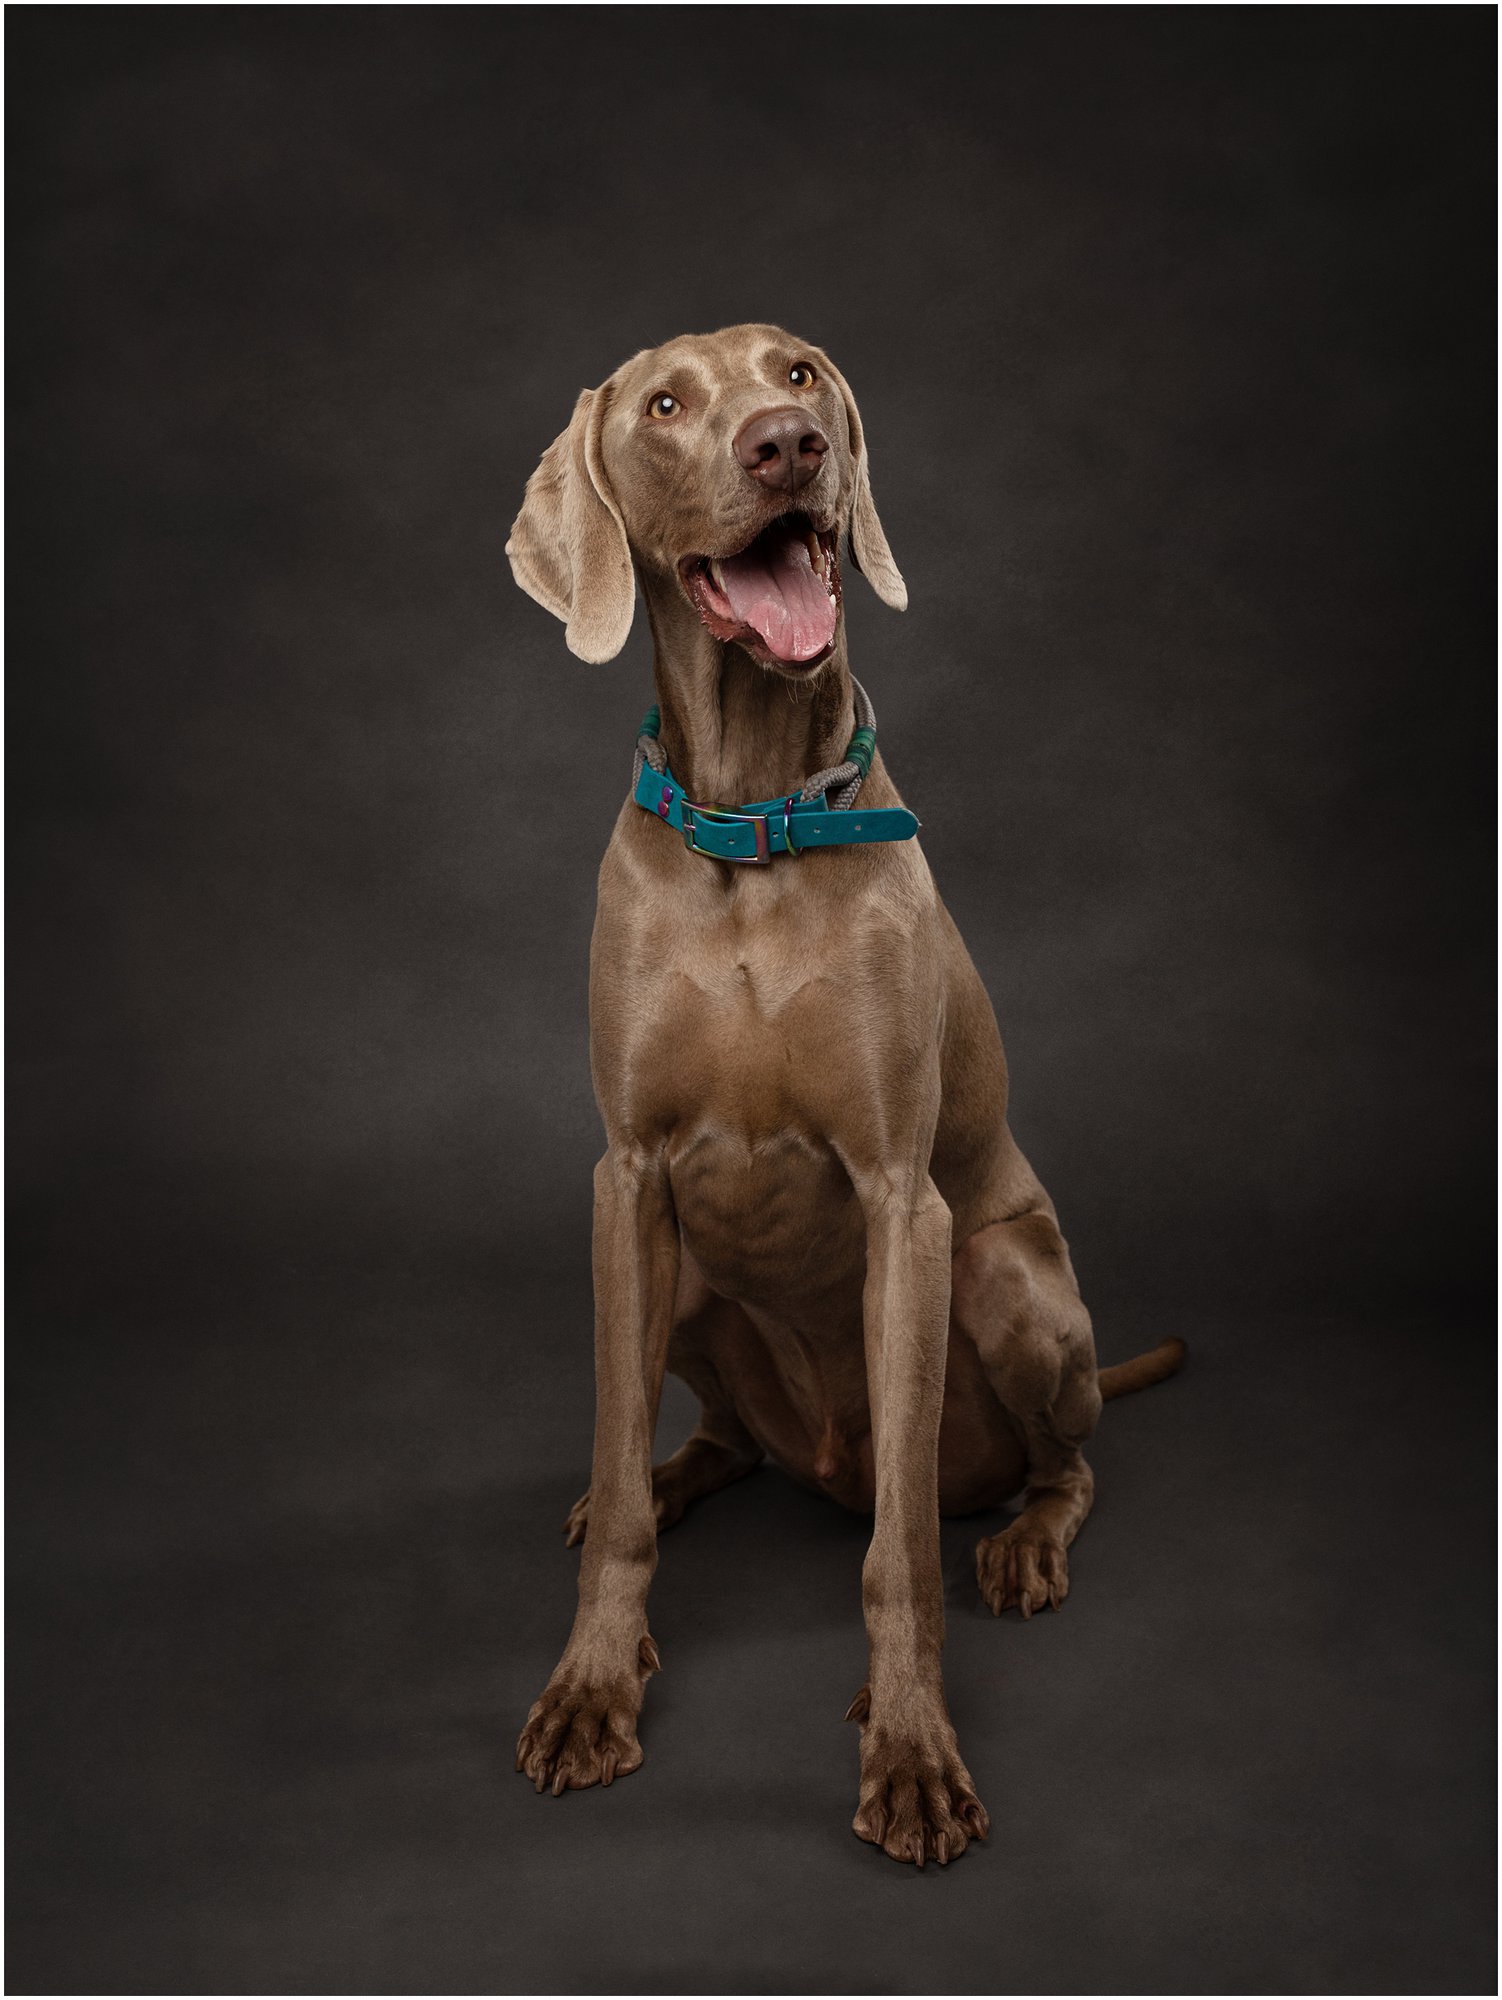 Weinmaraner dog poses on a dark grey background during Pet Portrait Photoshoot at Suffolk studio